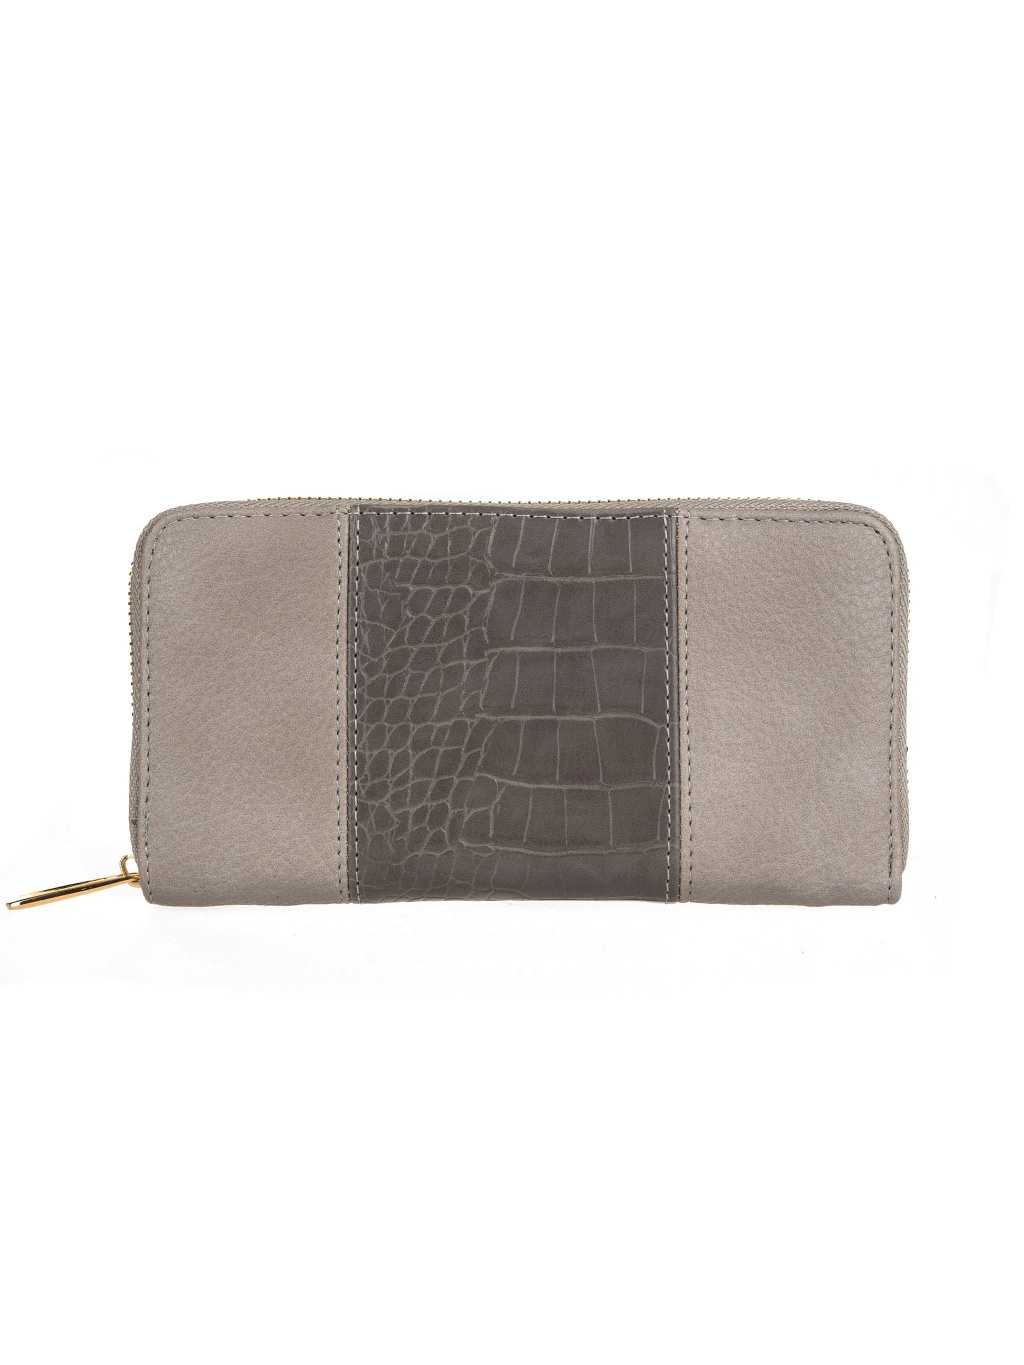 Dámská peněženka se vzorem krokodýlí kůže - šedá